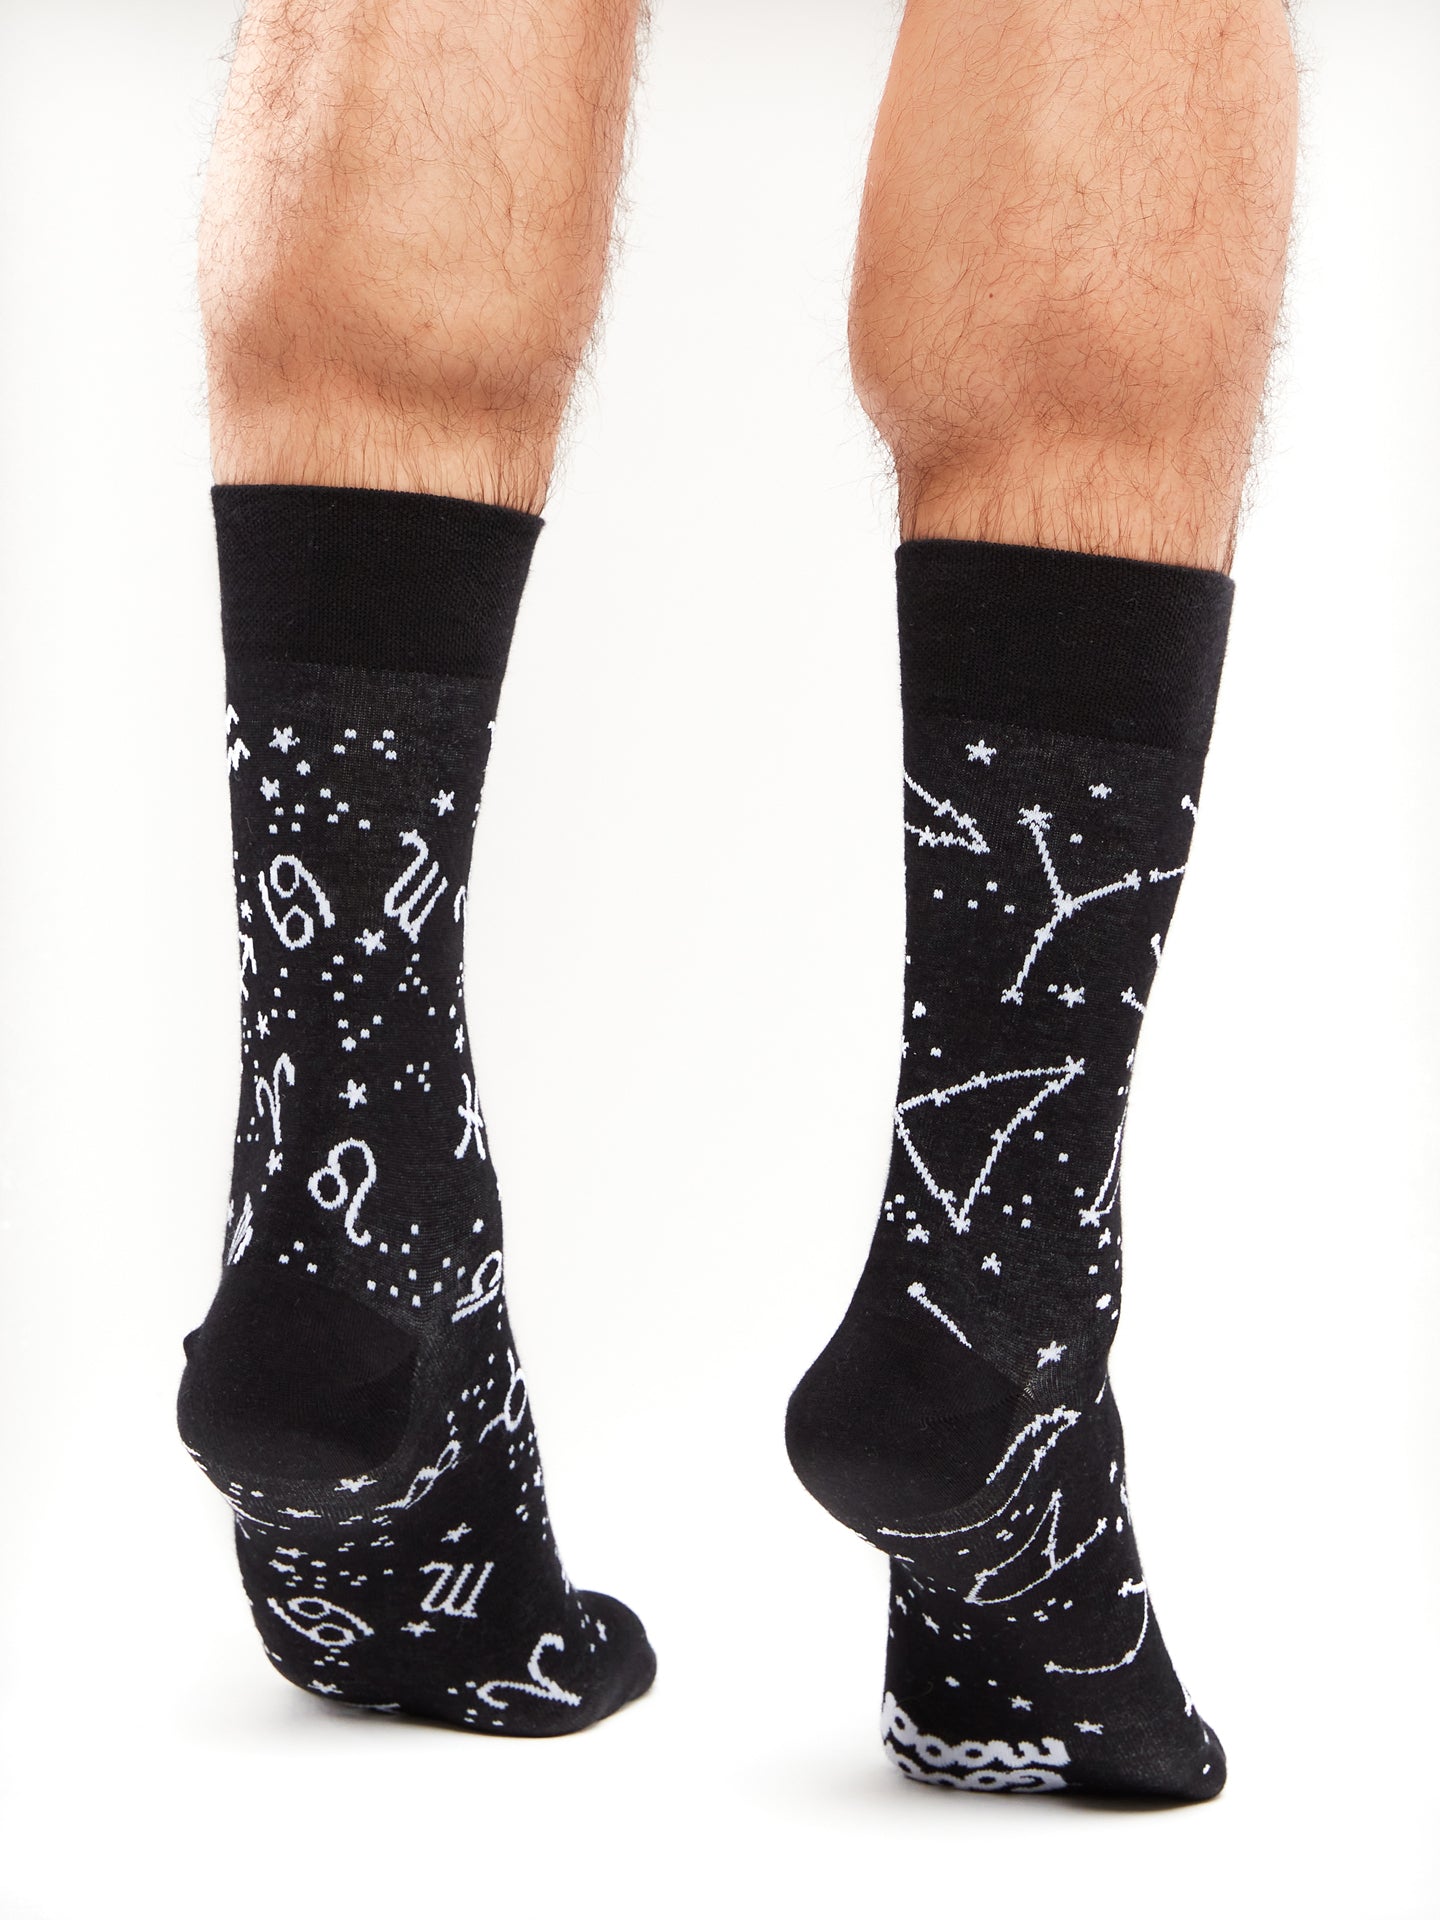 Regular Socks Zodiac Signs